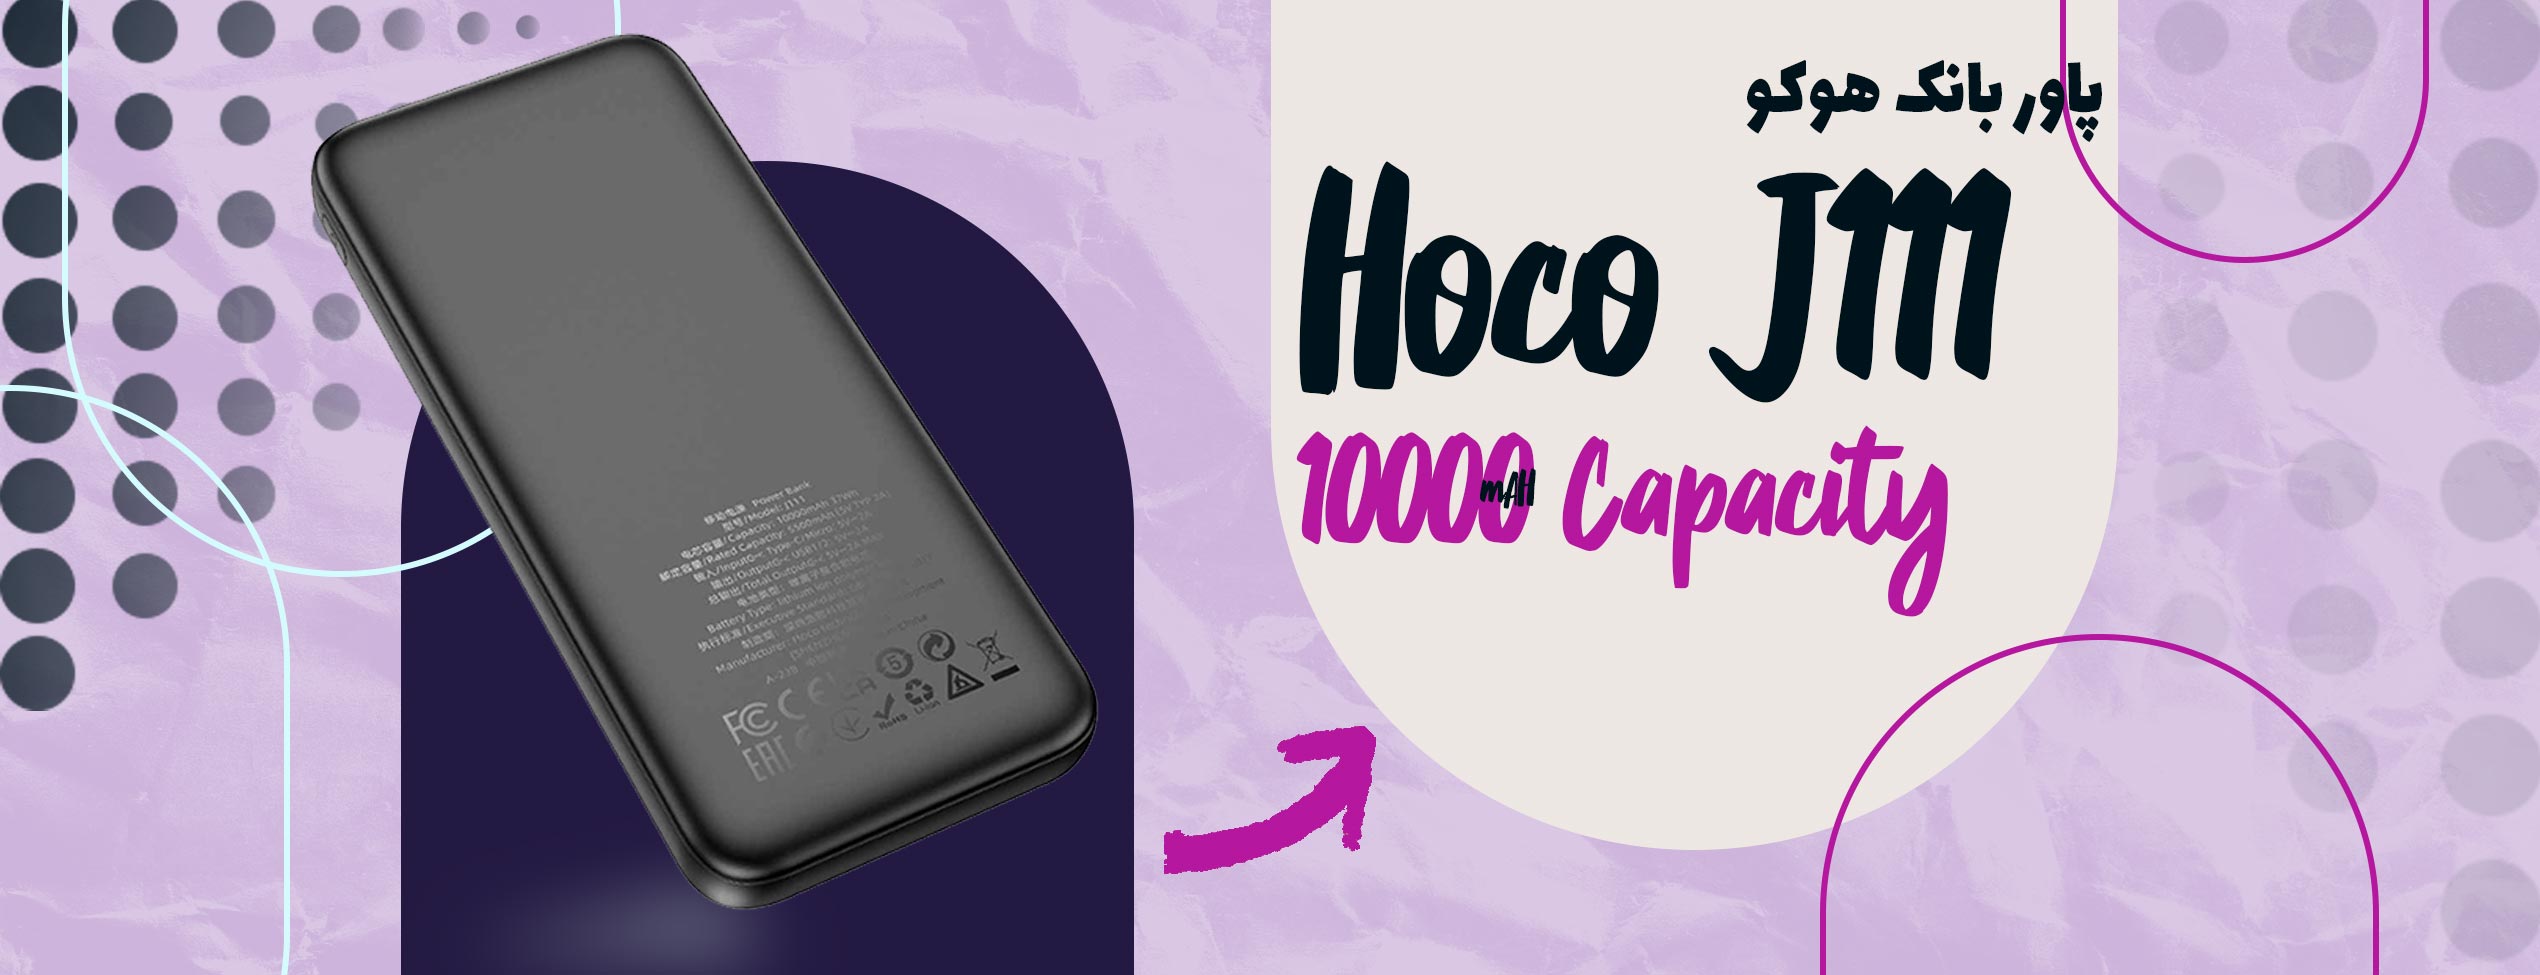 پاور بانک هوکو Hoco J111 ظرفیت 10000 میلی آمپر